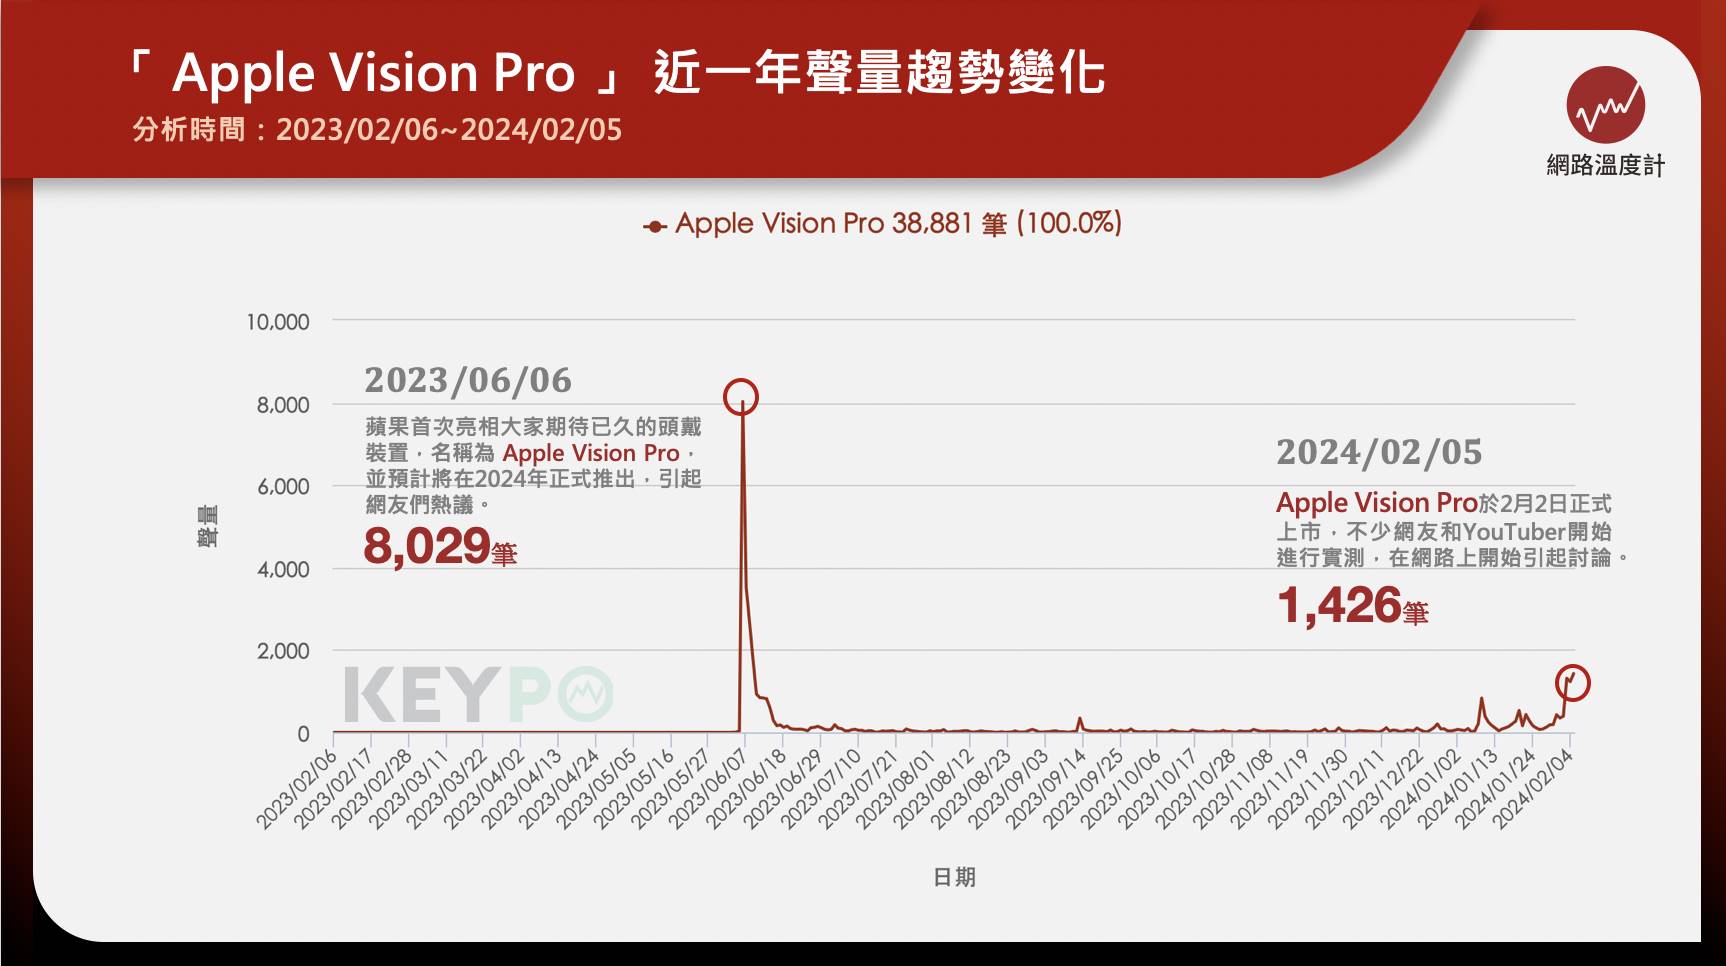 蘋果頭戴裝置Vision Pro在去（2023）年6月發布，並於2024年2月2日開賣，並已在19日開放預購，同時詳細的規格、配件等等也正式公布，售價自3,499美金（約新台幣10萬元）起，最貴版本要價3,899美金（約新台幣12萬元）。